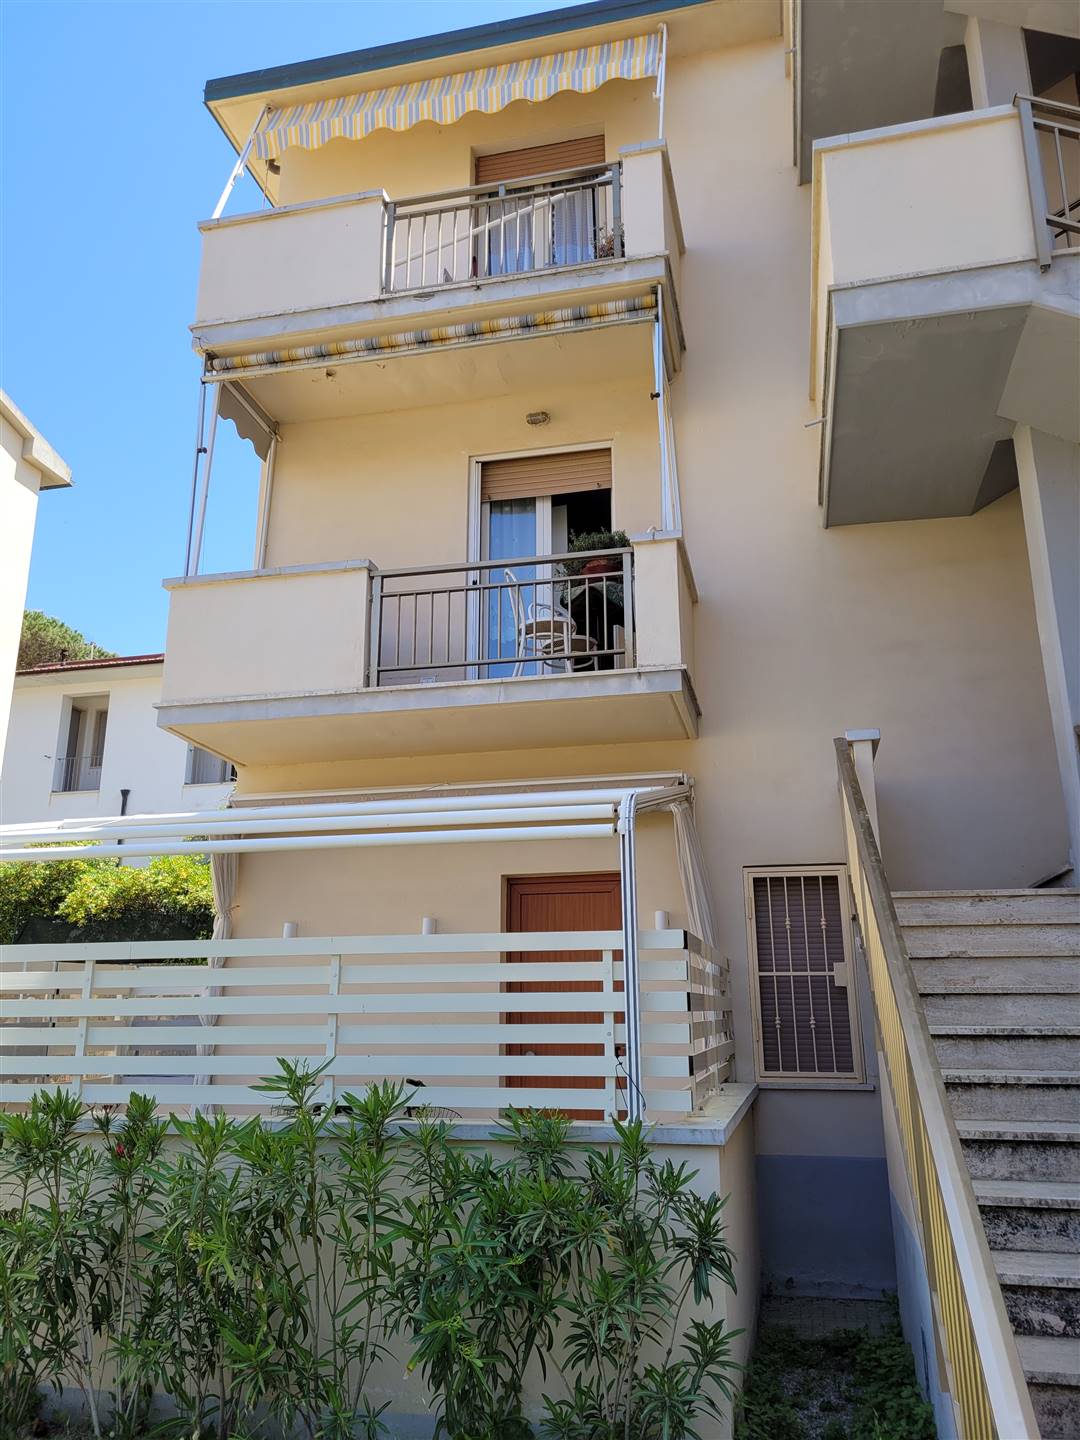 Appartamento in affitto a Castagneto Carducci, 3 locali, zona na di Castagneto Carducci, prezzo € 360 | PortaleAgenzieImmobiliari.it